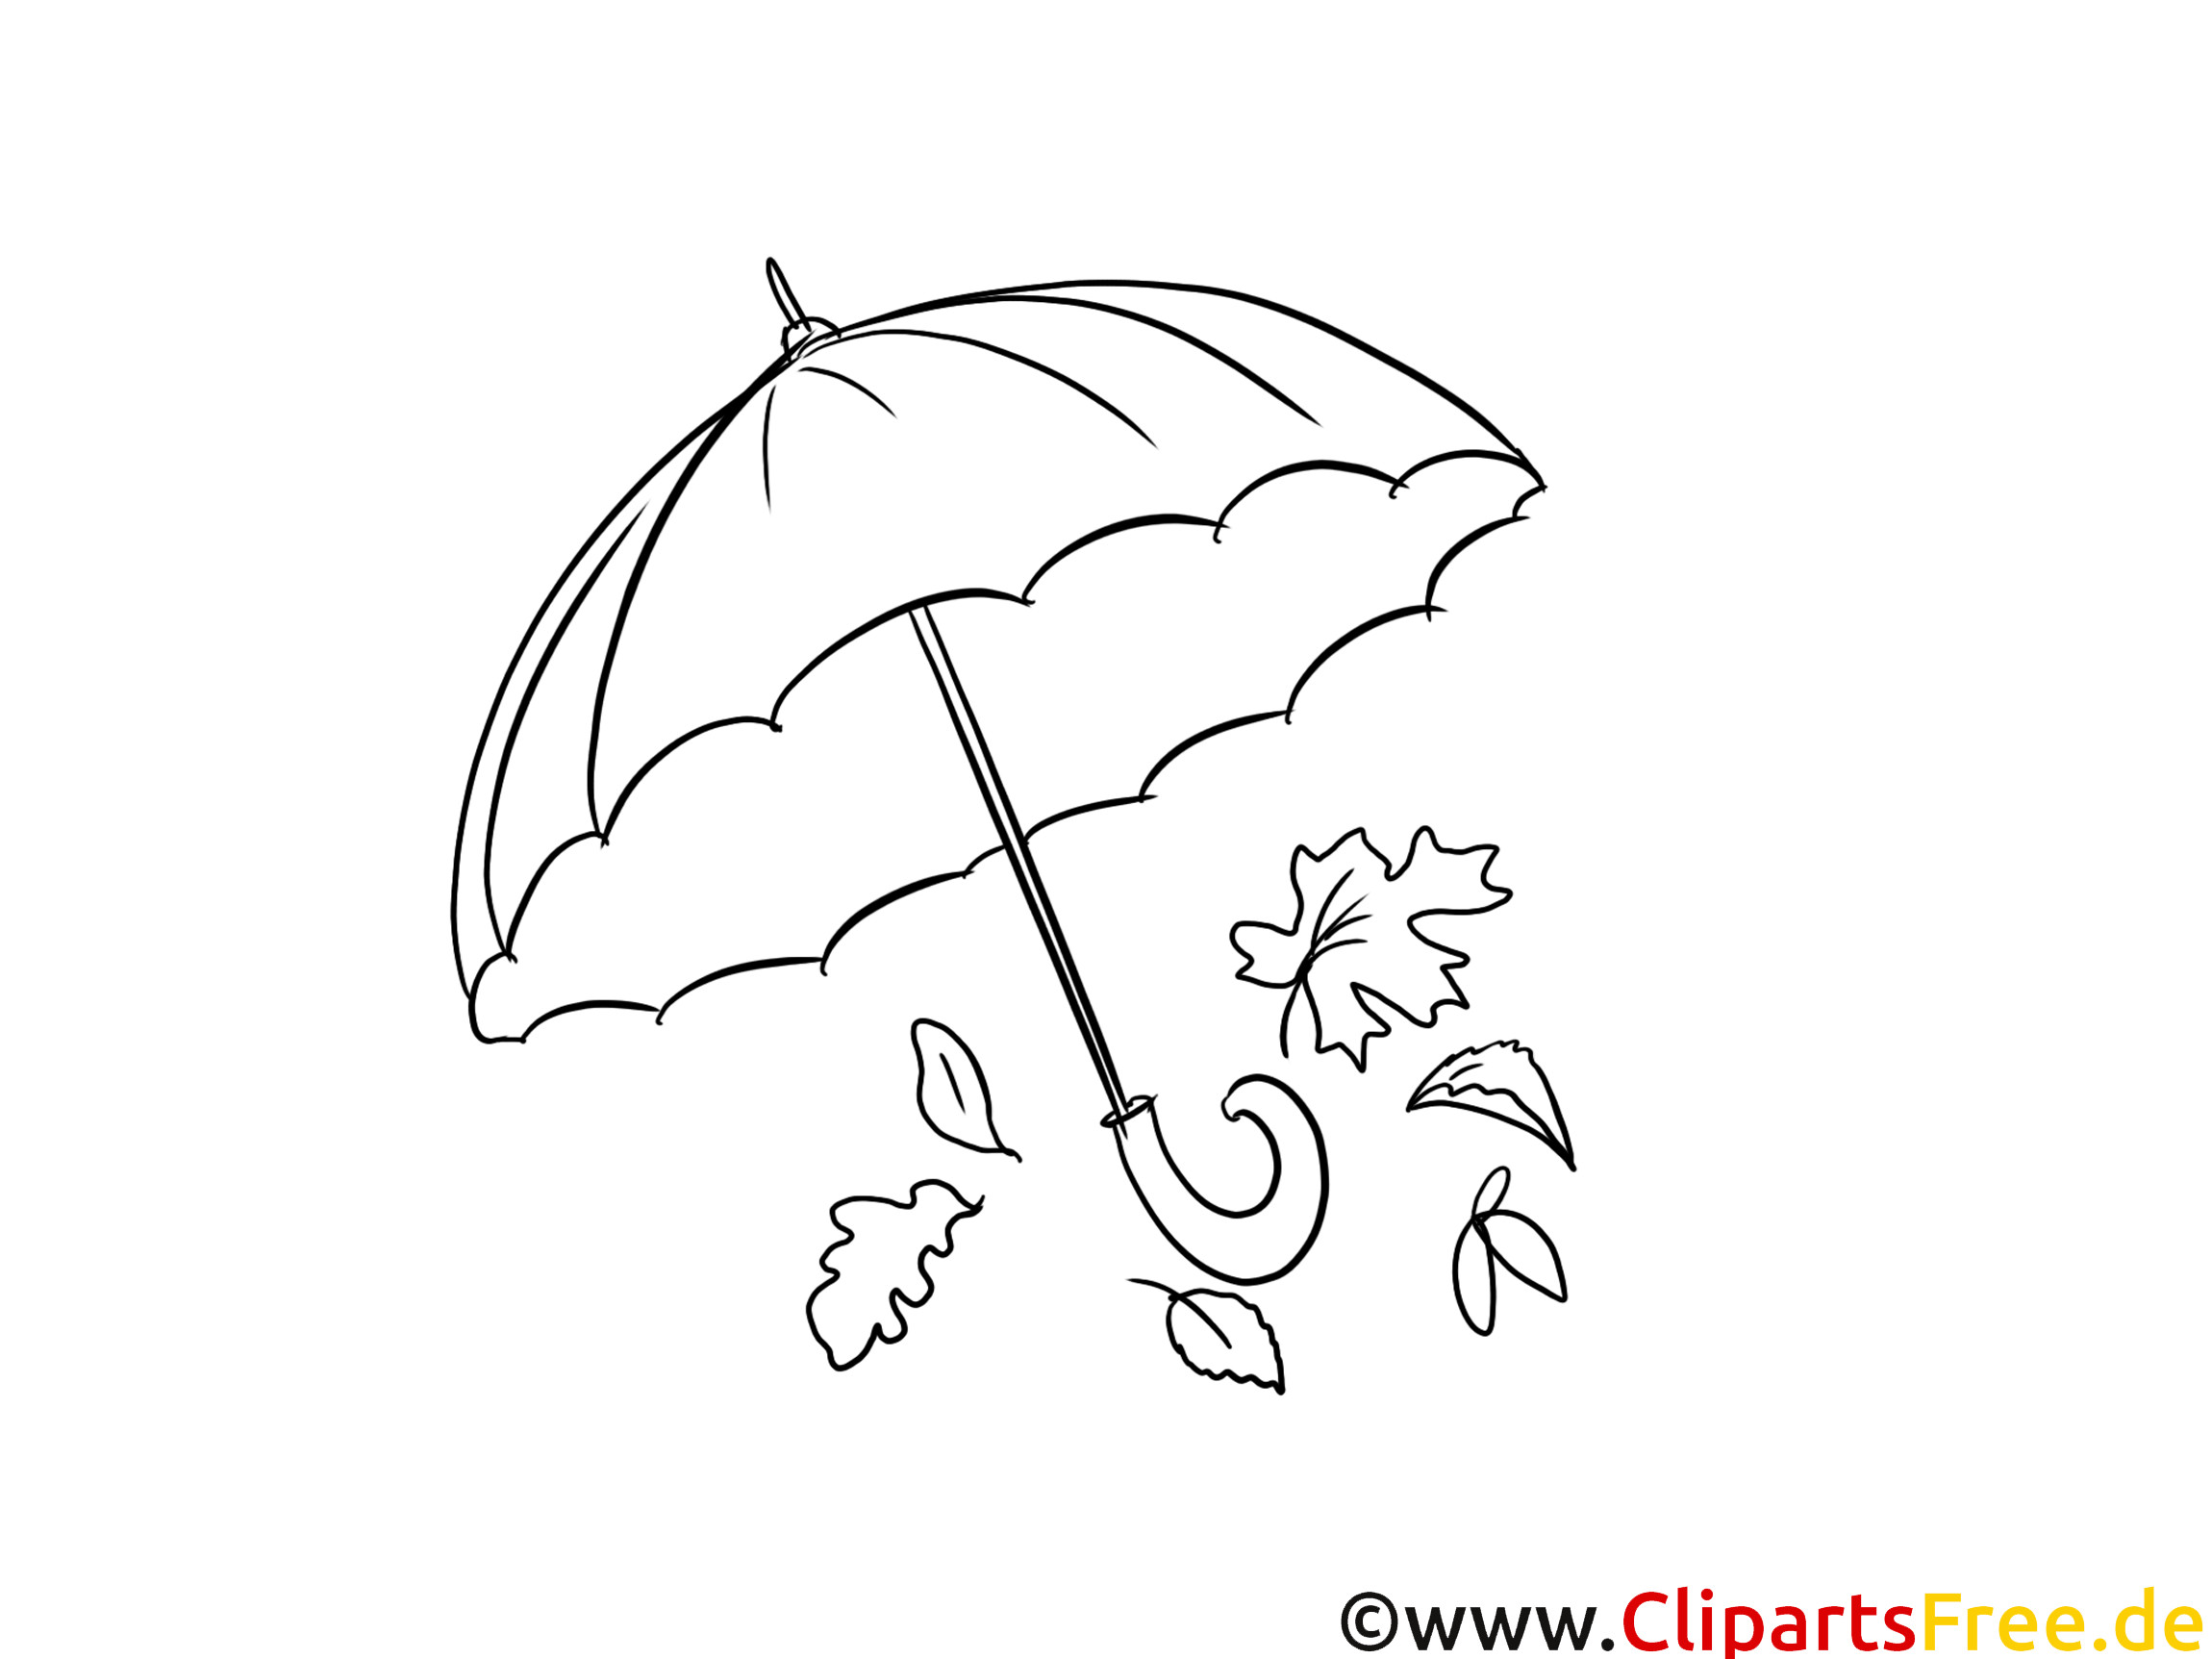 Malvorlagen Für Kinder
 Regenschirm Malvorlagen für Kinder